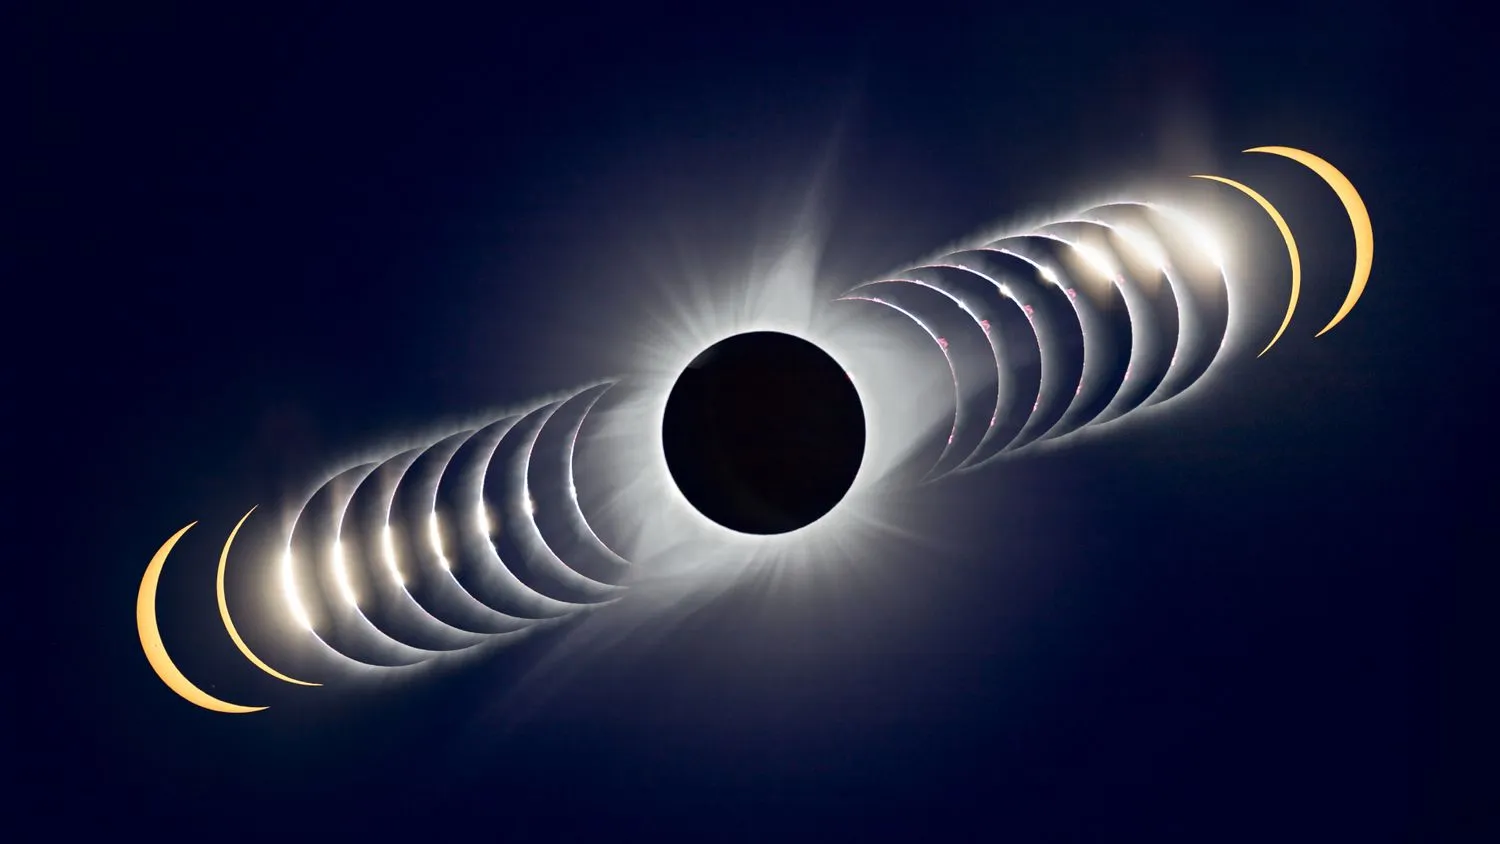 Die Sequenz der totalen Sonnenfinsternis zeigt, wie die Sonne hinter dem zunehmenden Mond verschwindet und dann wieder auftaucht.